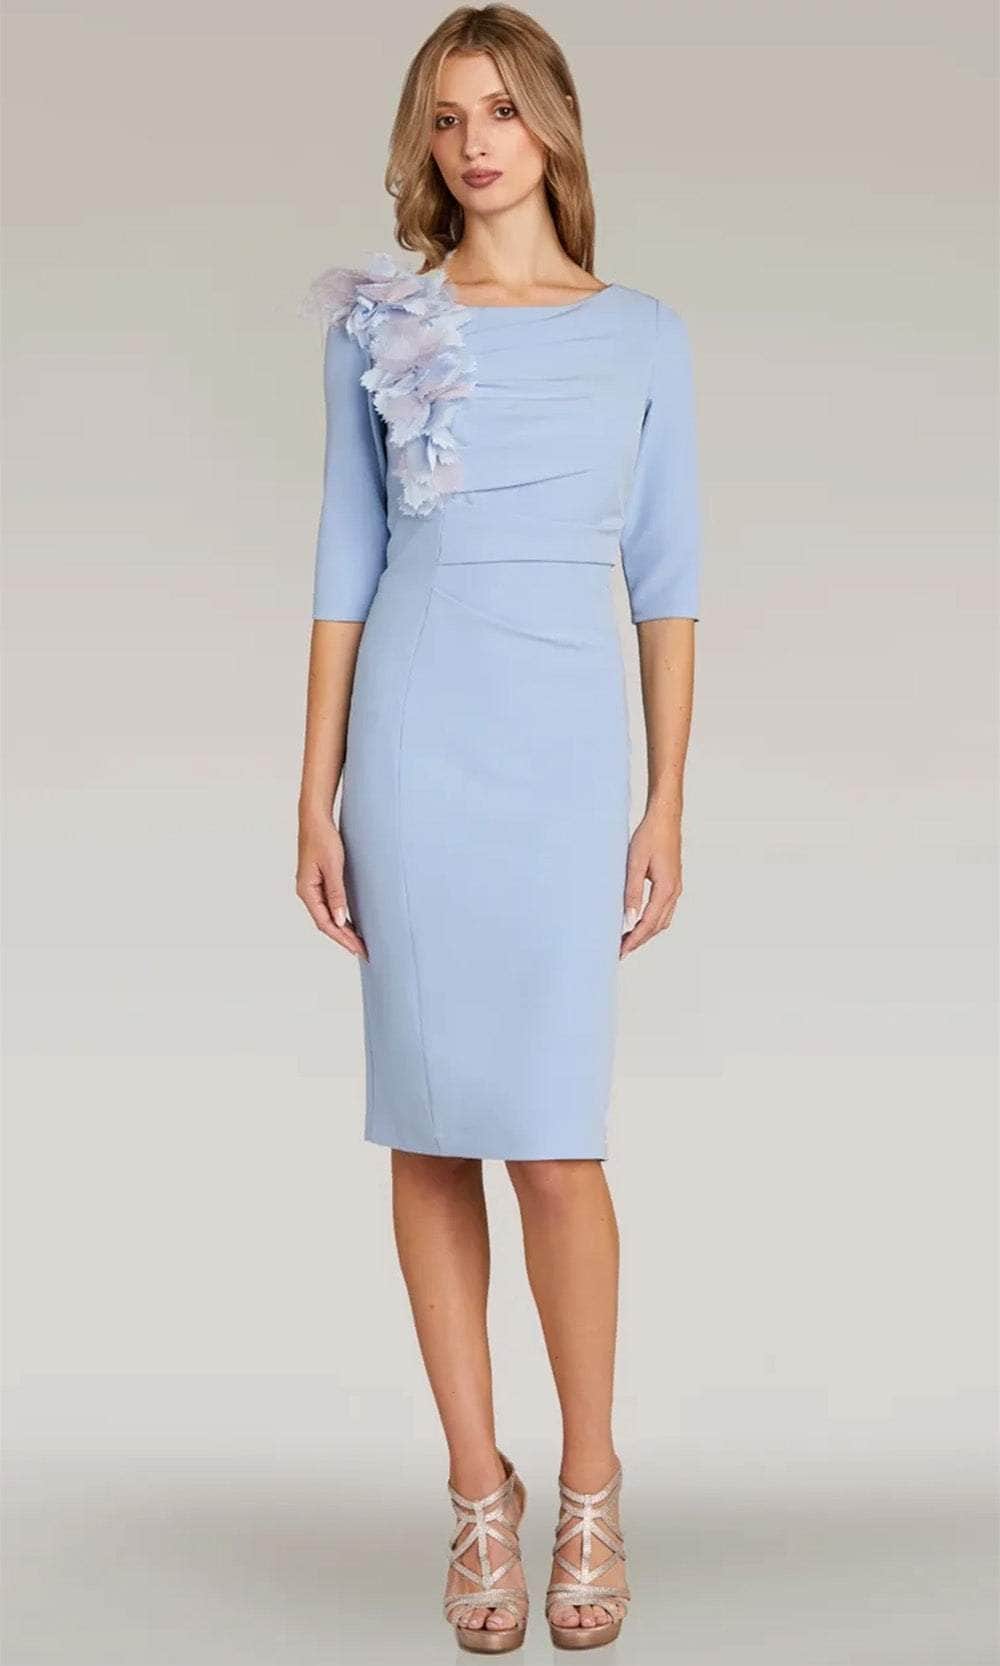 Gia Franco 12318 - Quarter Sleeve Applique Dress Semi Formal 2 / Blue